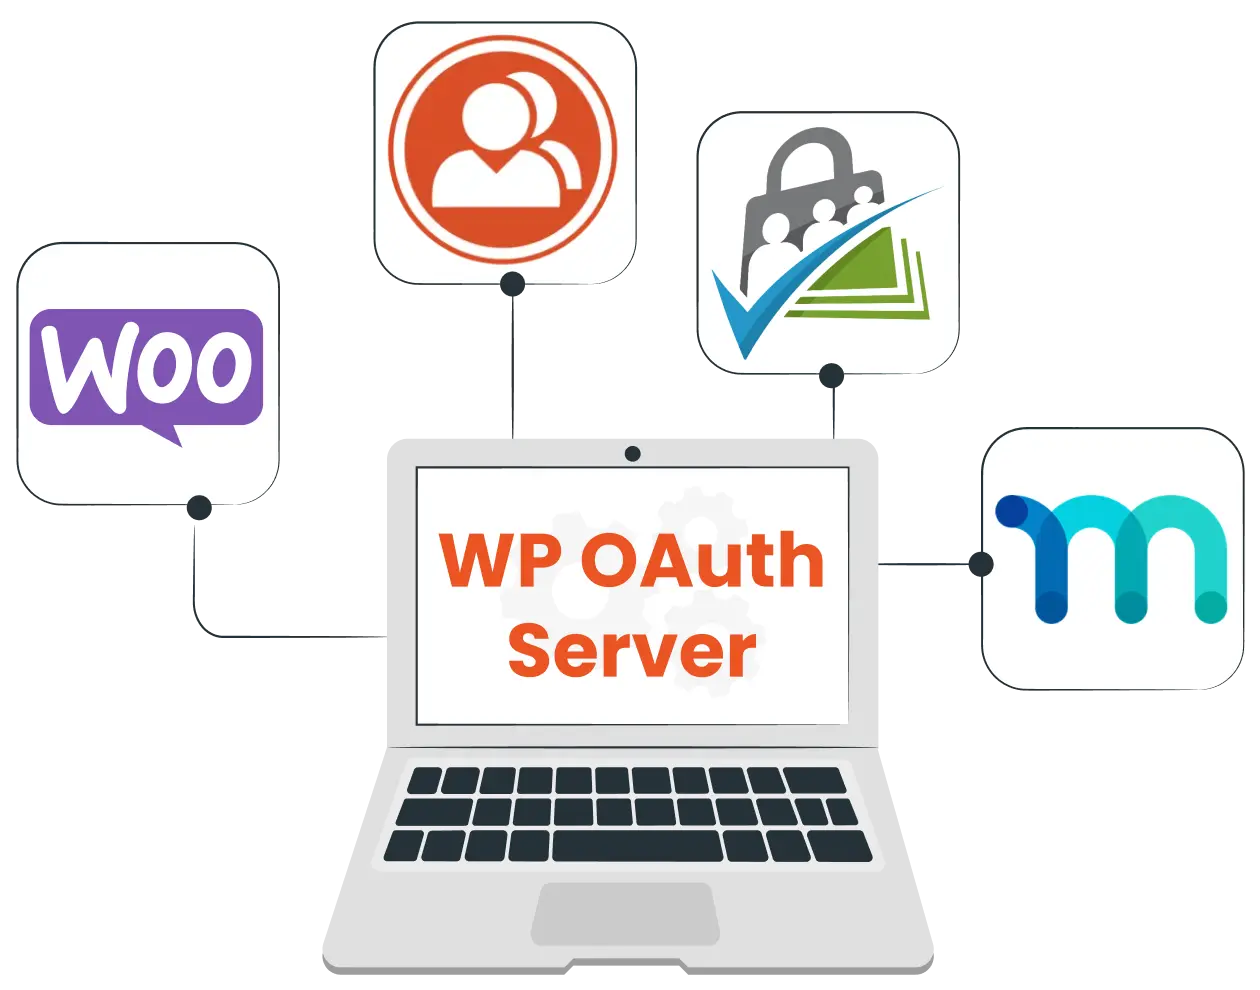 メンバーシップの統合 - WP OAuth サーバー